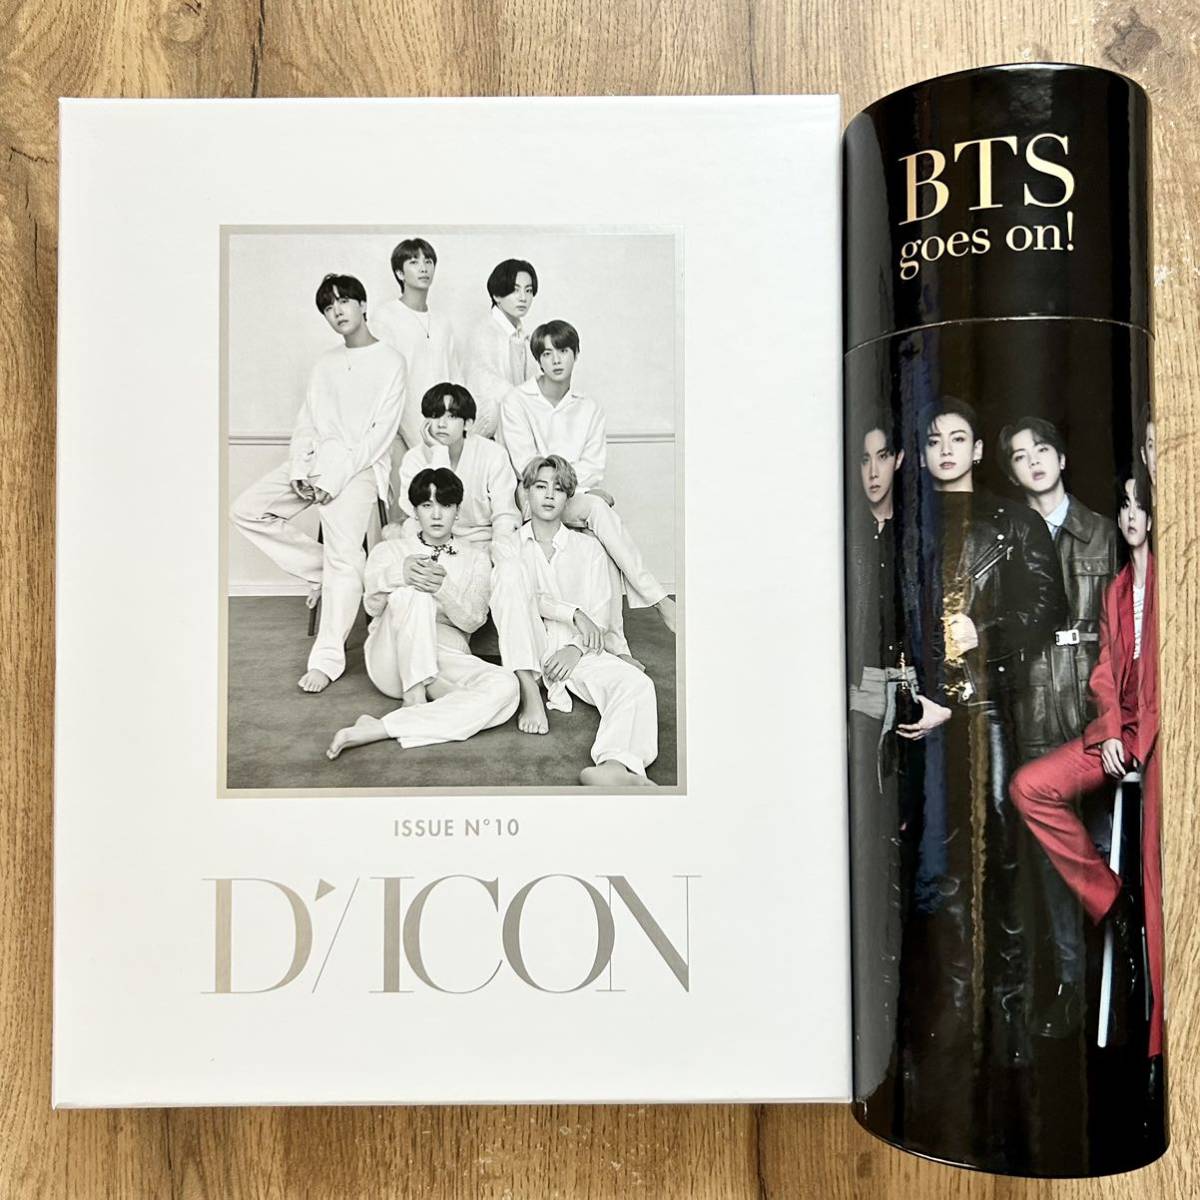 Dicon vol 10『BTS goes on 』Deluxe Edition 写真集 日本語翻訳冊子と